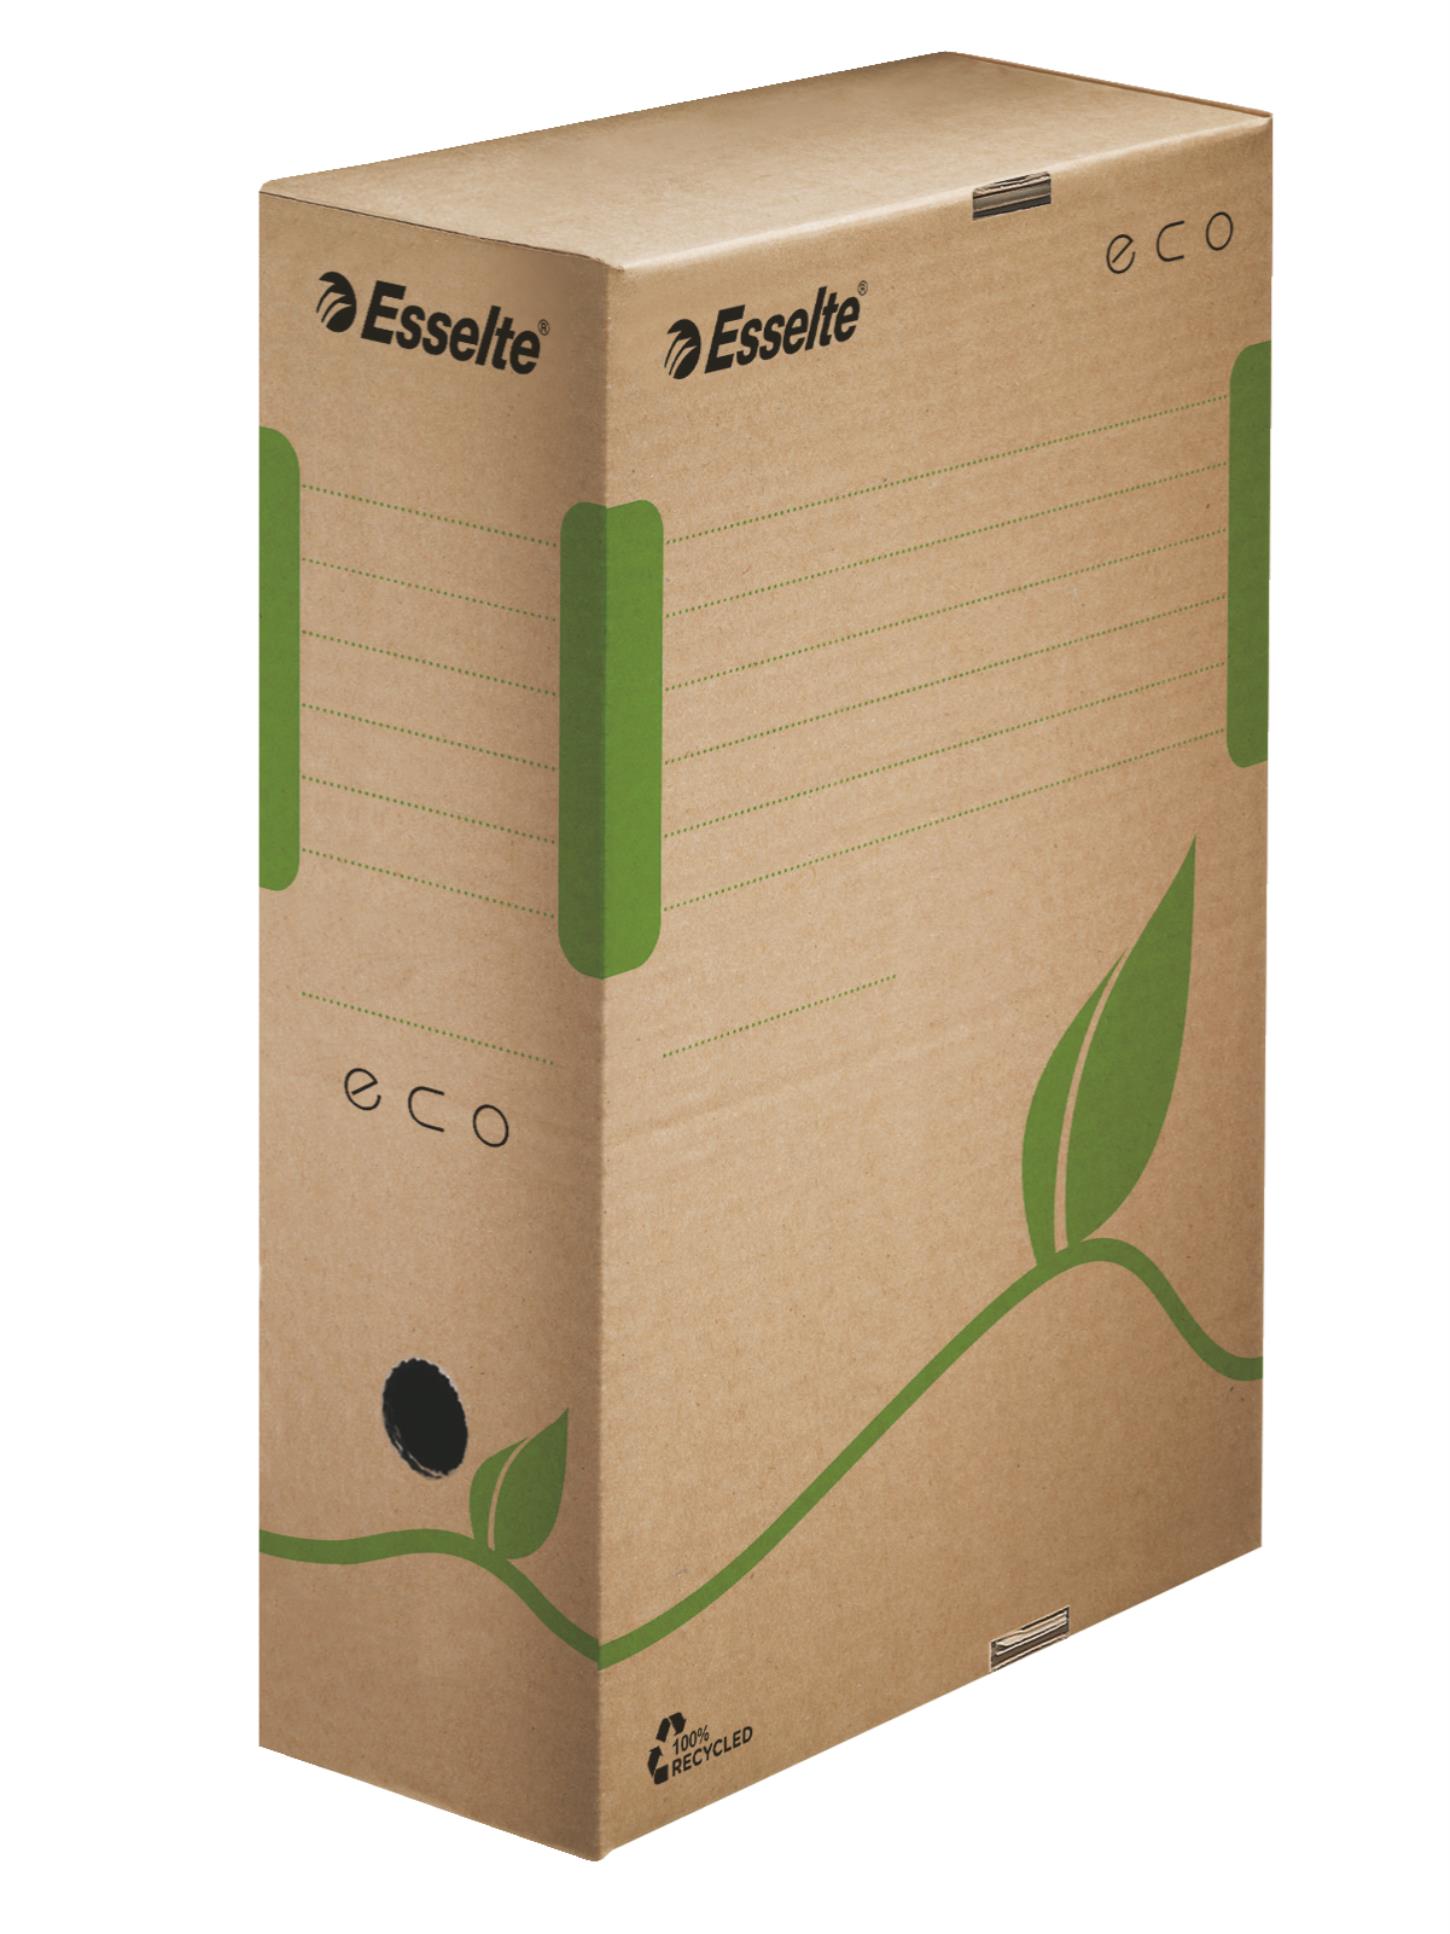 Archivační krabice Esselte ECO - hnědá, 10 cm